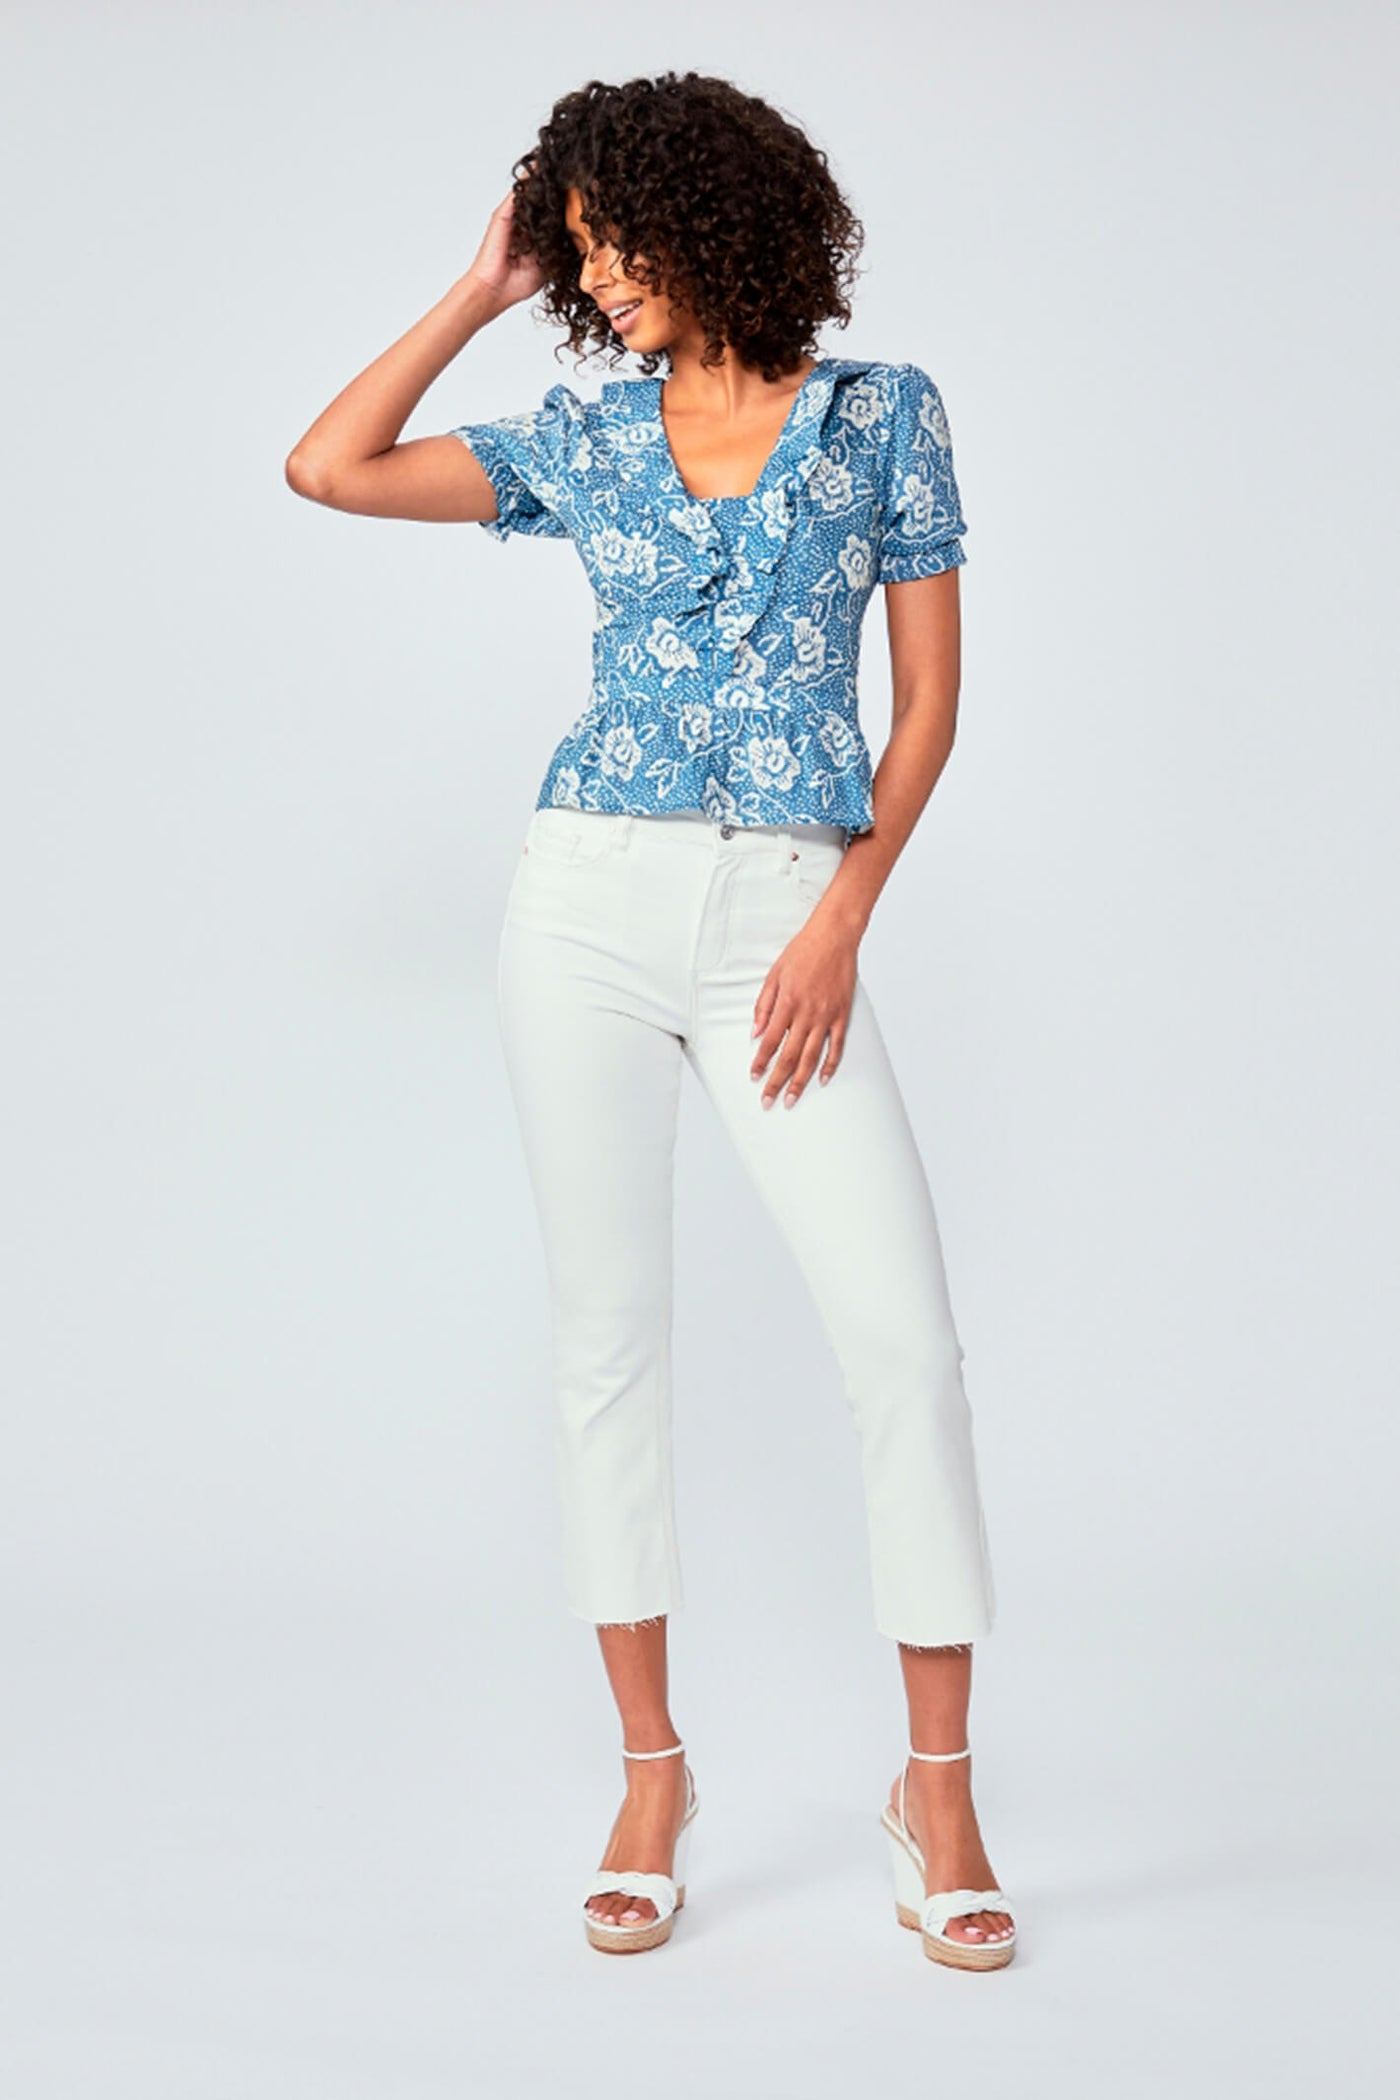 Paige Cayenne Navy Floral Print Short Sleeve Blouse - Lonah Boutique